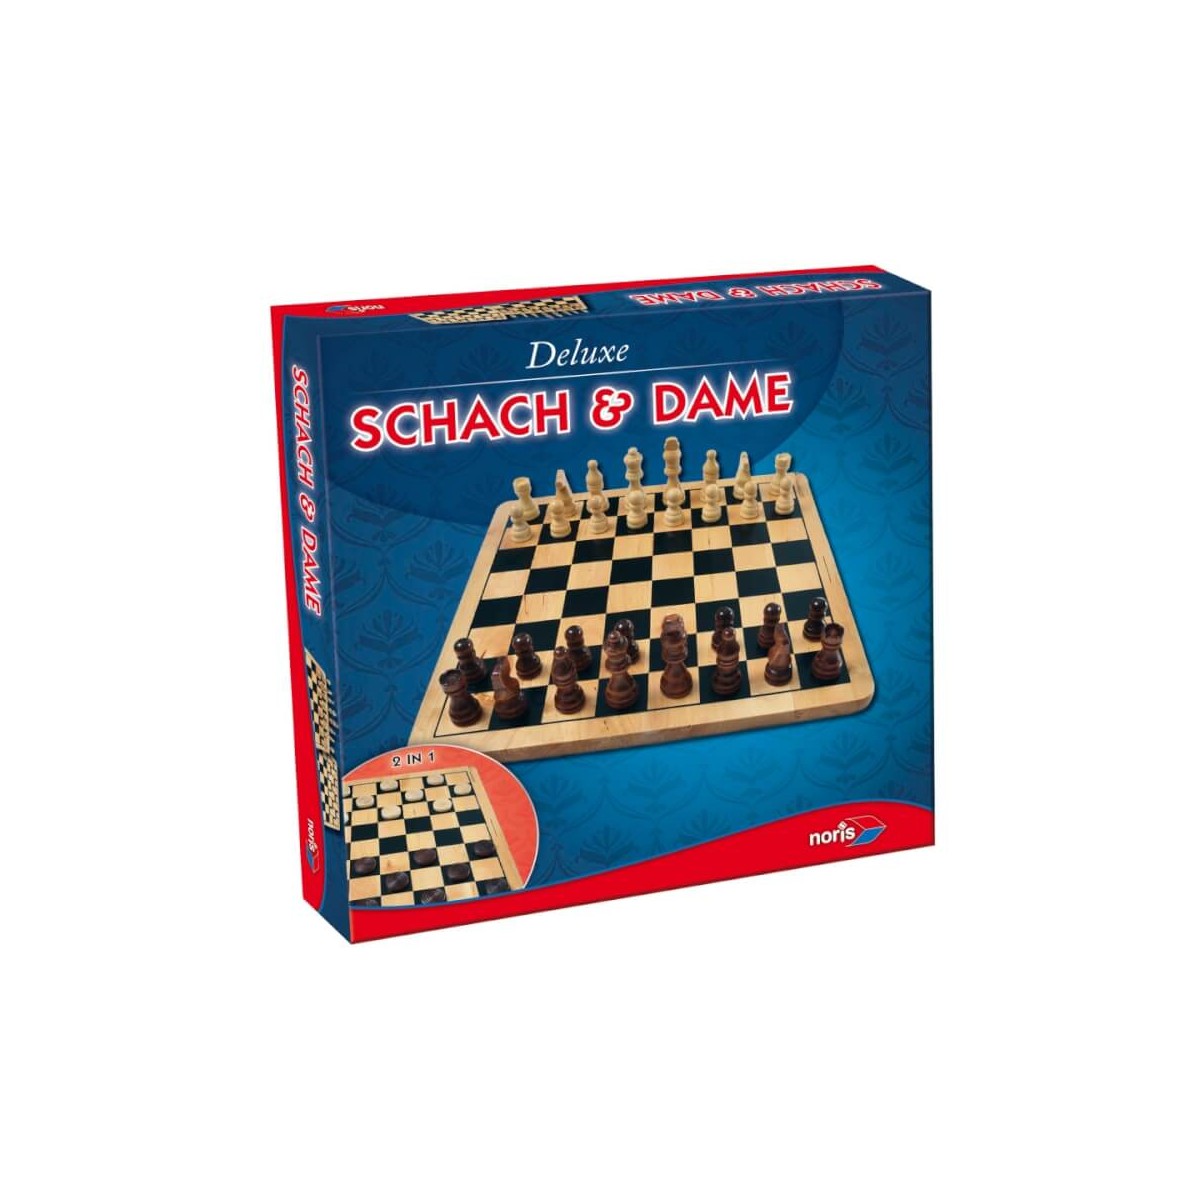 Spielwaren Krömer - Noris Spiele - Schach/Dame aus Holz